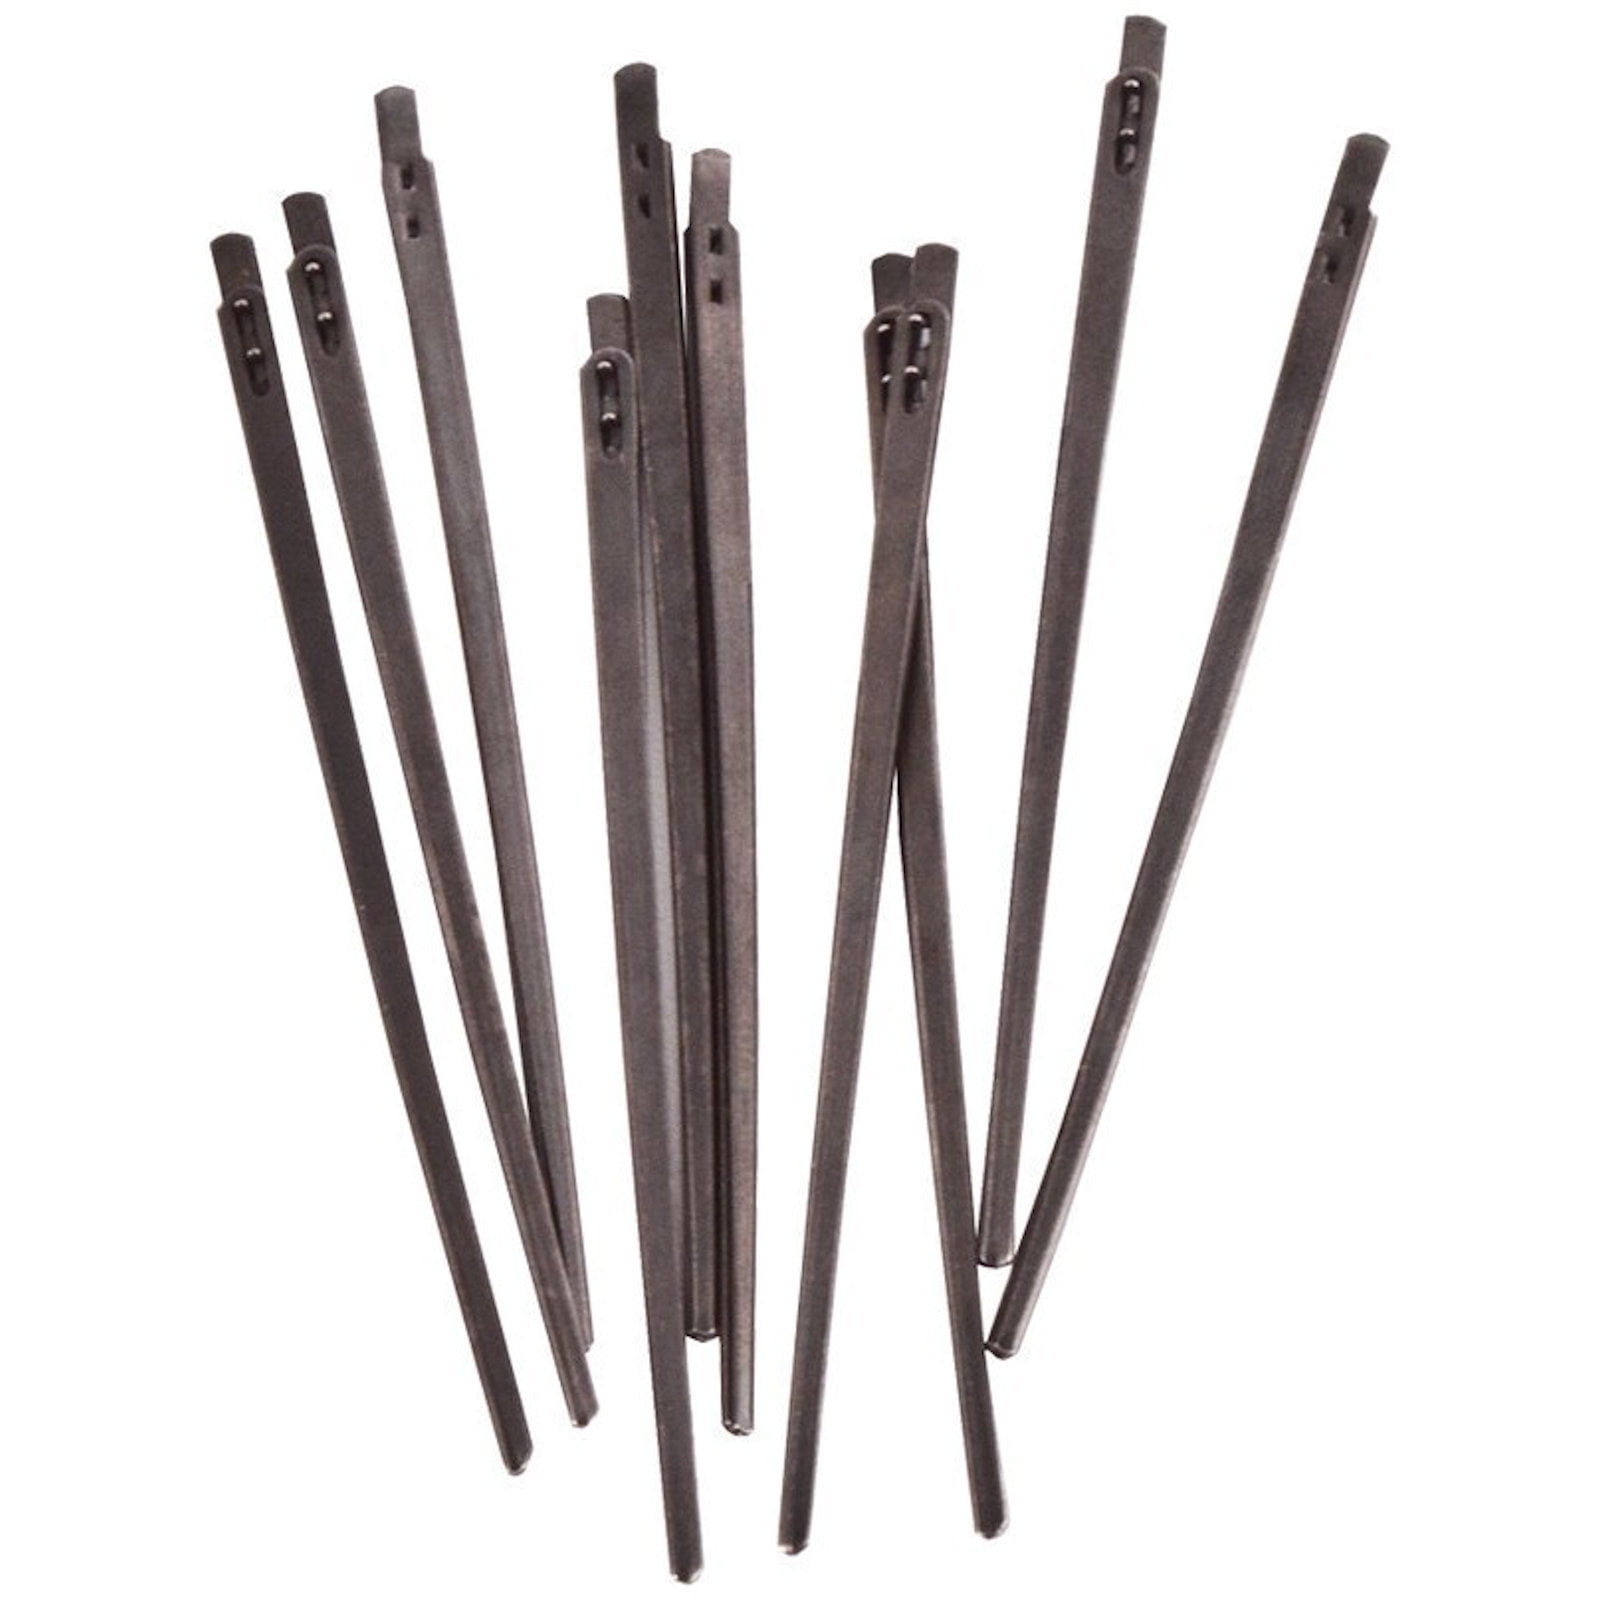 Realeather - Leather Needle - 2-Prong Lacing Needle